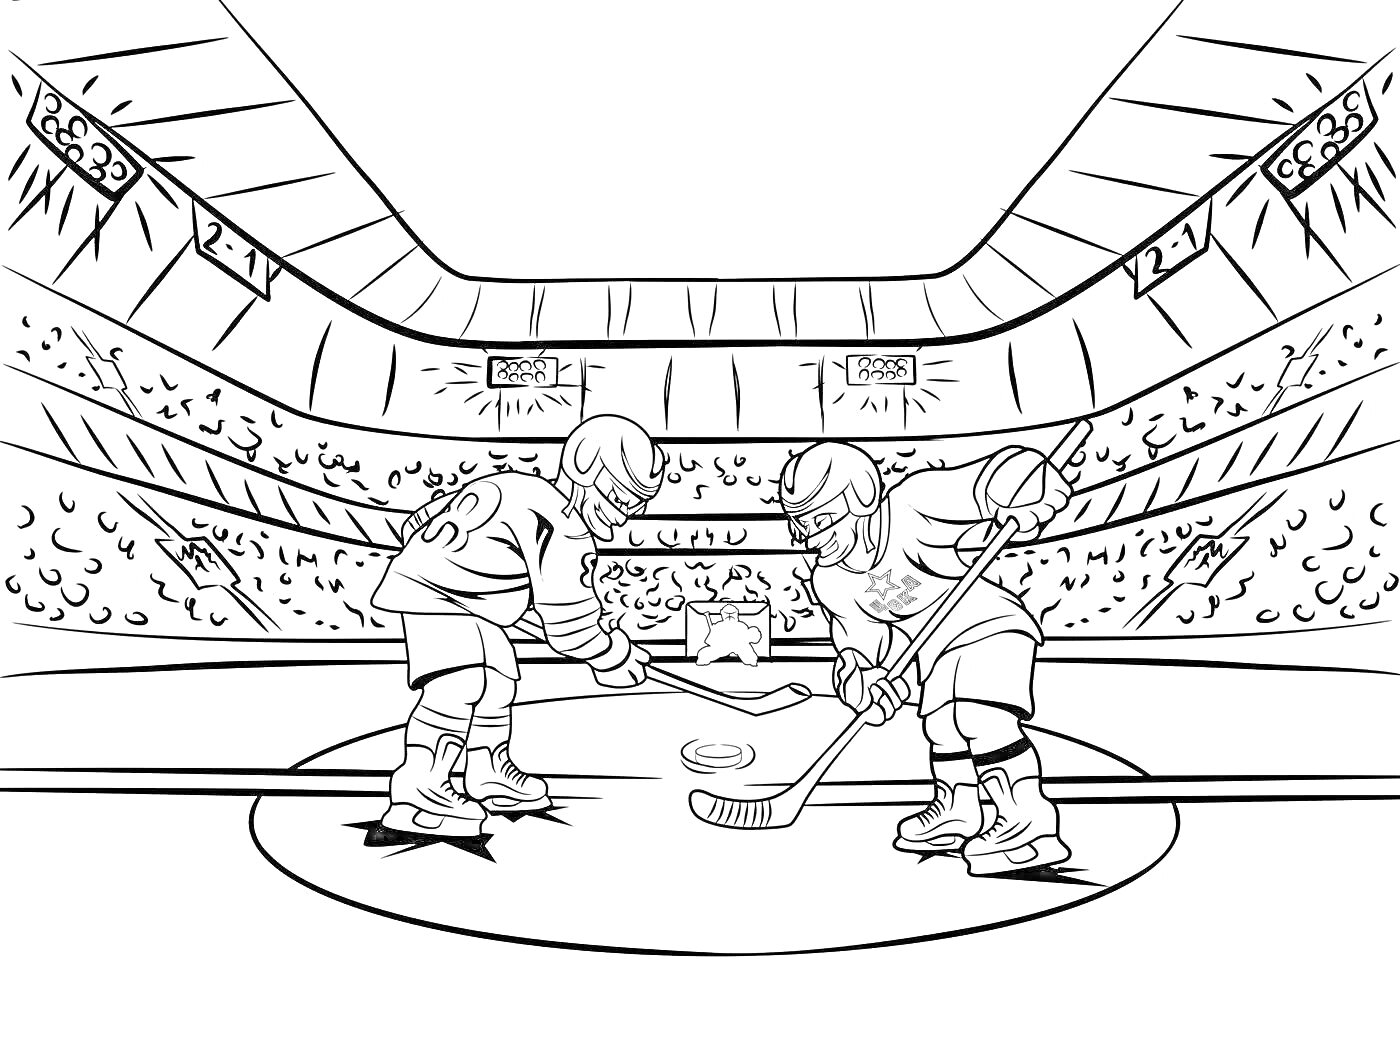 Раскраска Двое хоккеистов ЦСКА во время игрового момента на ледовой арене с трибунами и зрителями